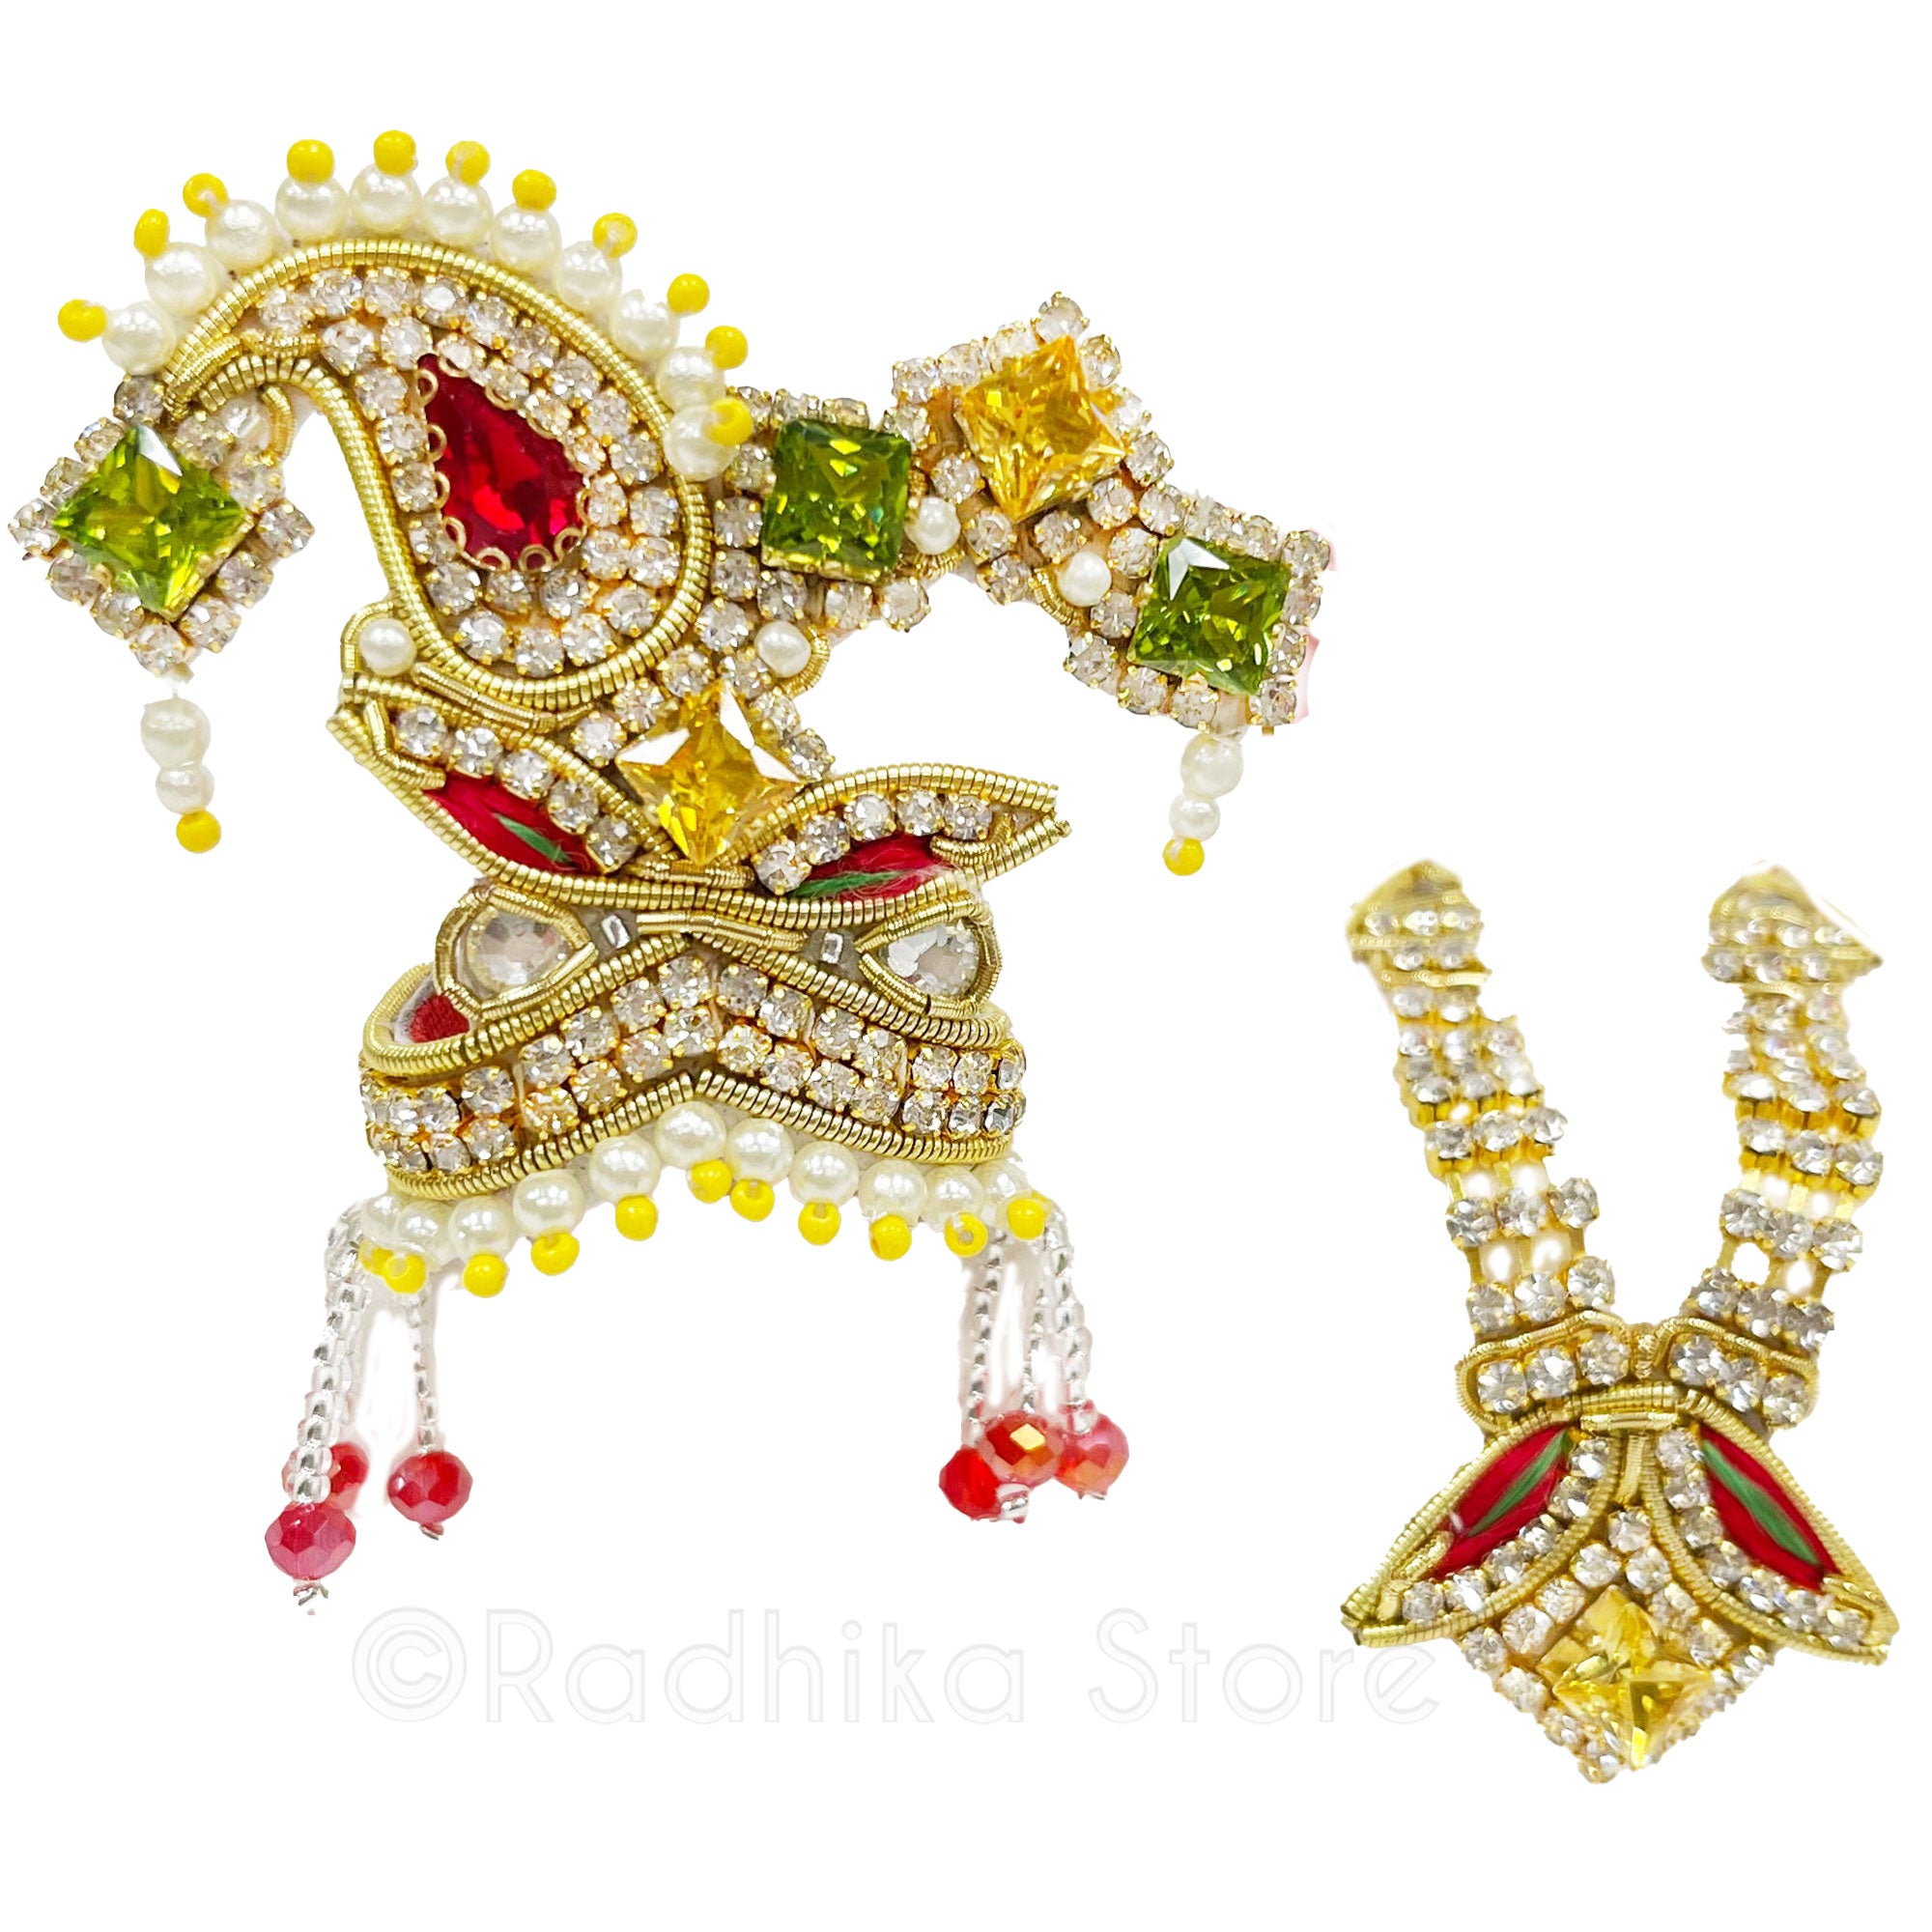 Ishodyan Flower - Deity Crown and Necklace Set